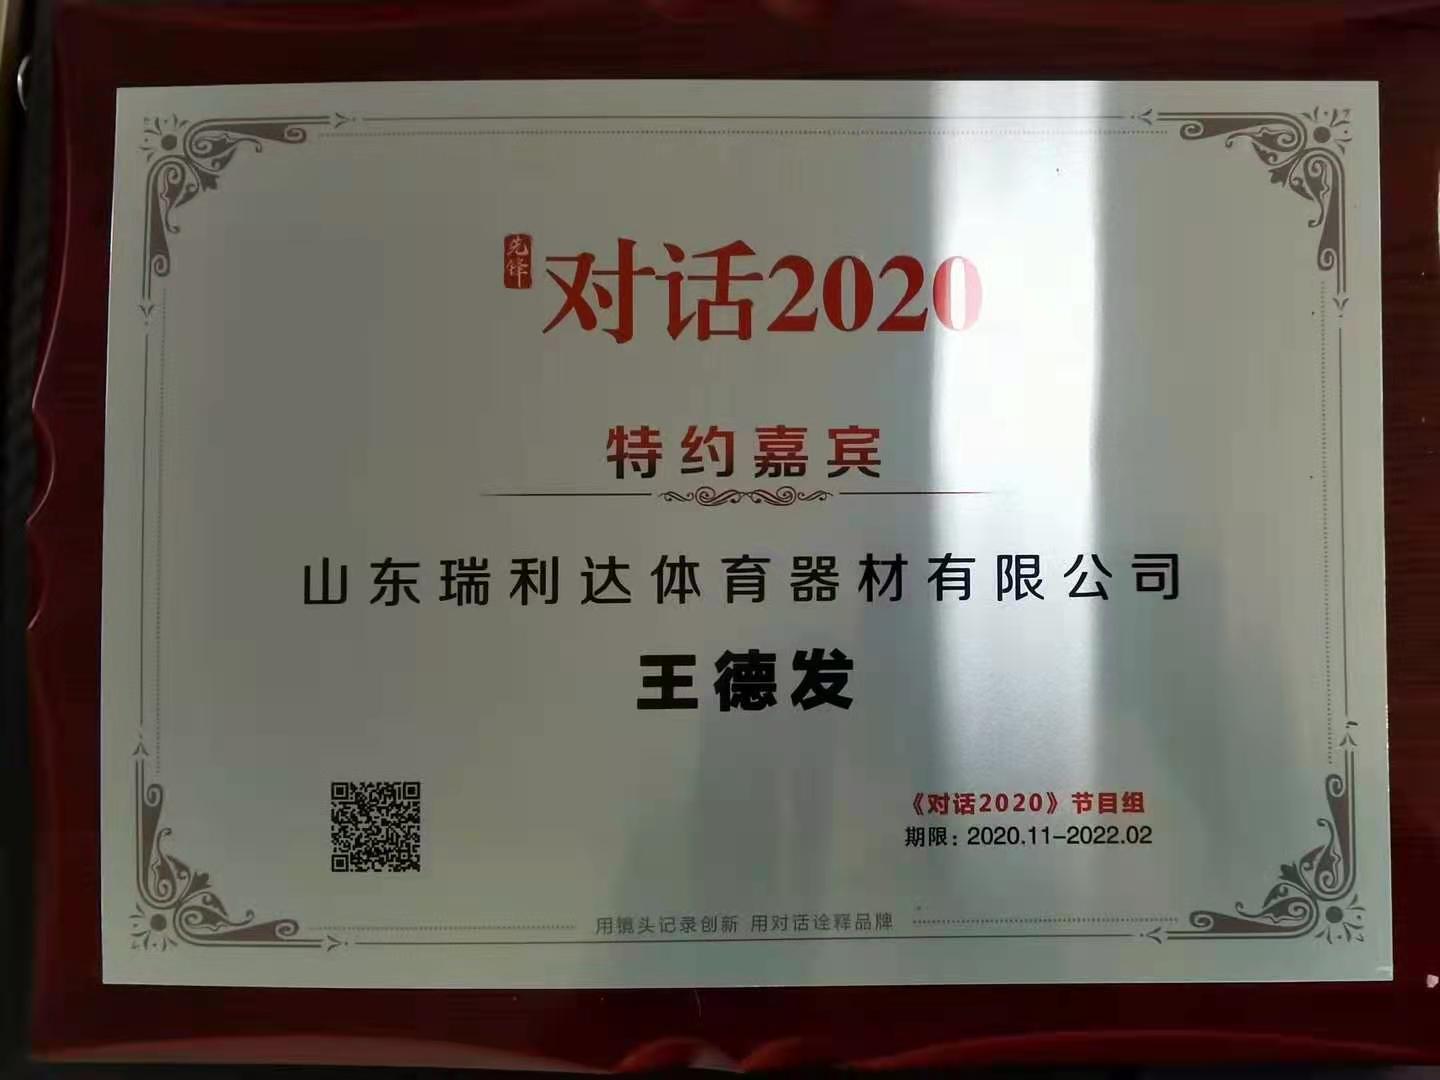 Realleader blev nomineret til det kinesiske brandudviklingsprojekt (2)